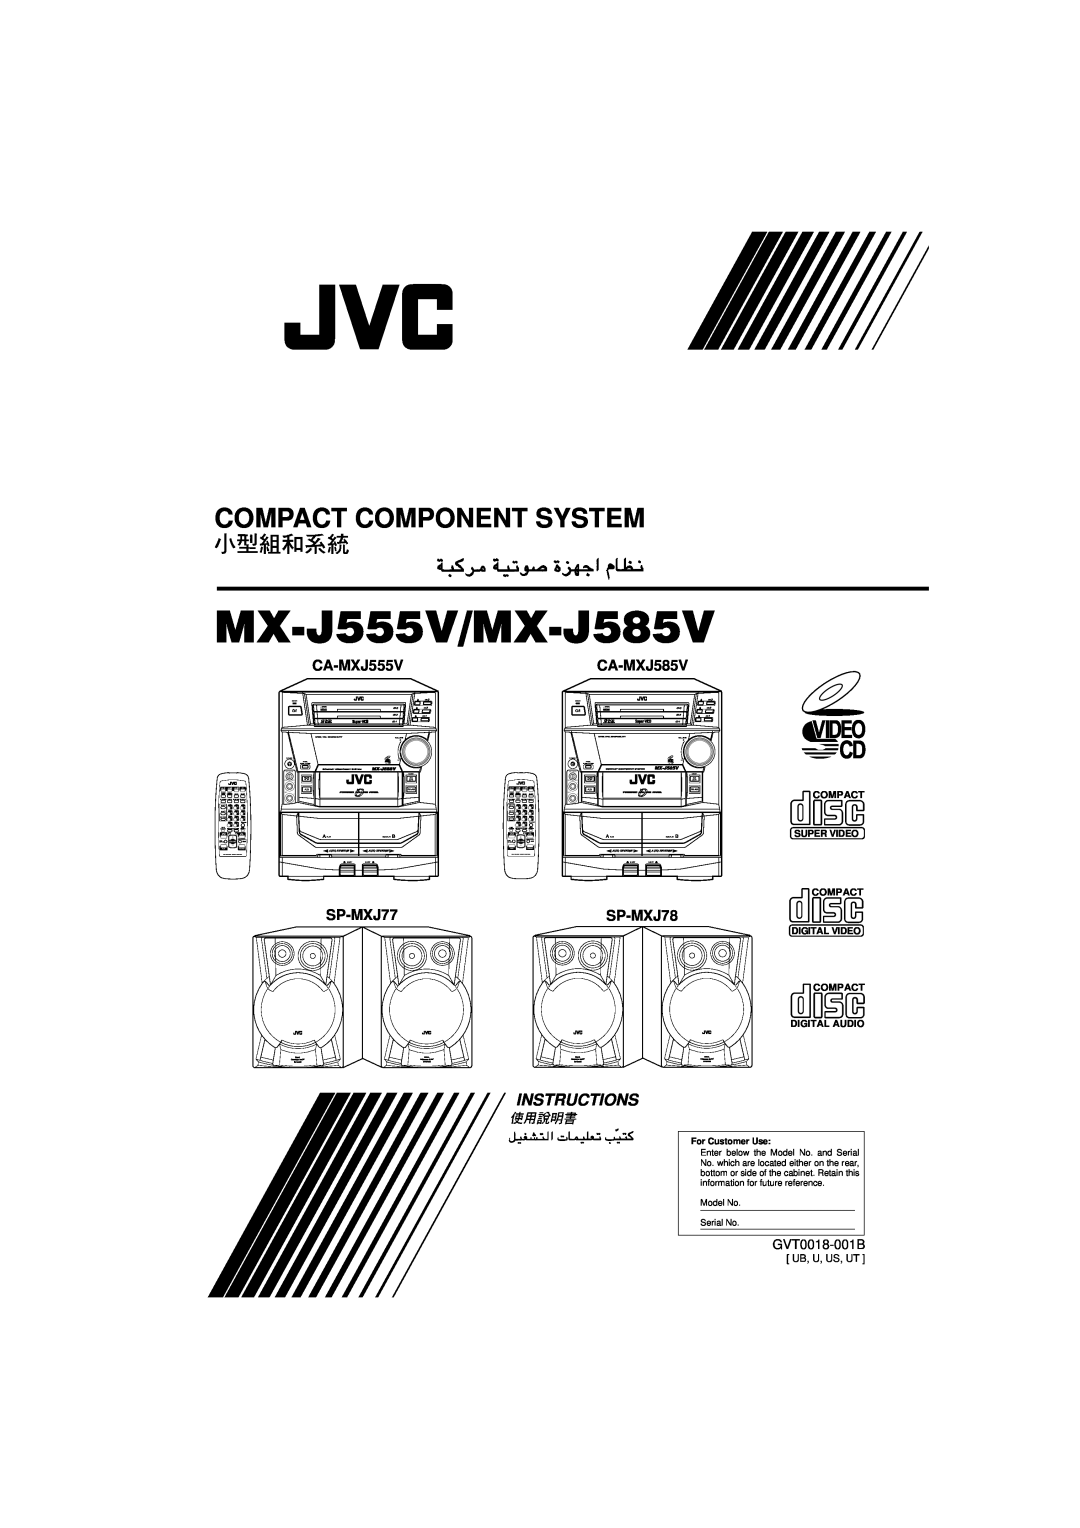 JVC manual Compact Component System, MX-J555V/MX-J585V, Instructions, CA-MXJ555V, CA-MXJ585V, SP-MXJ77, SP-MXJ78 